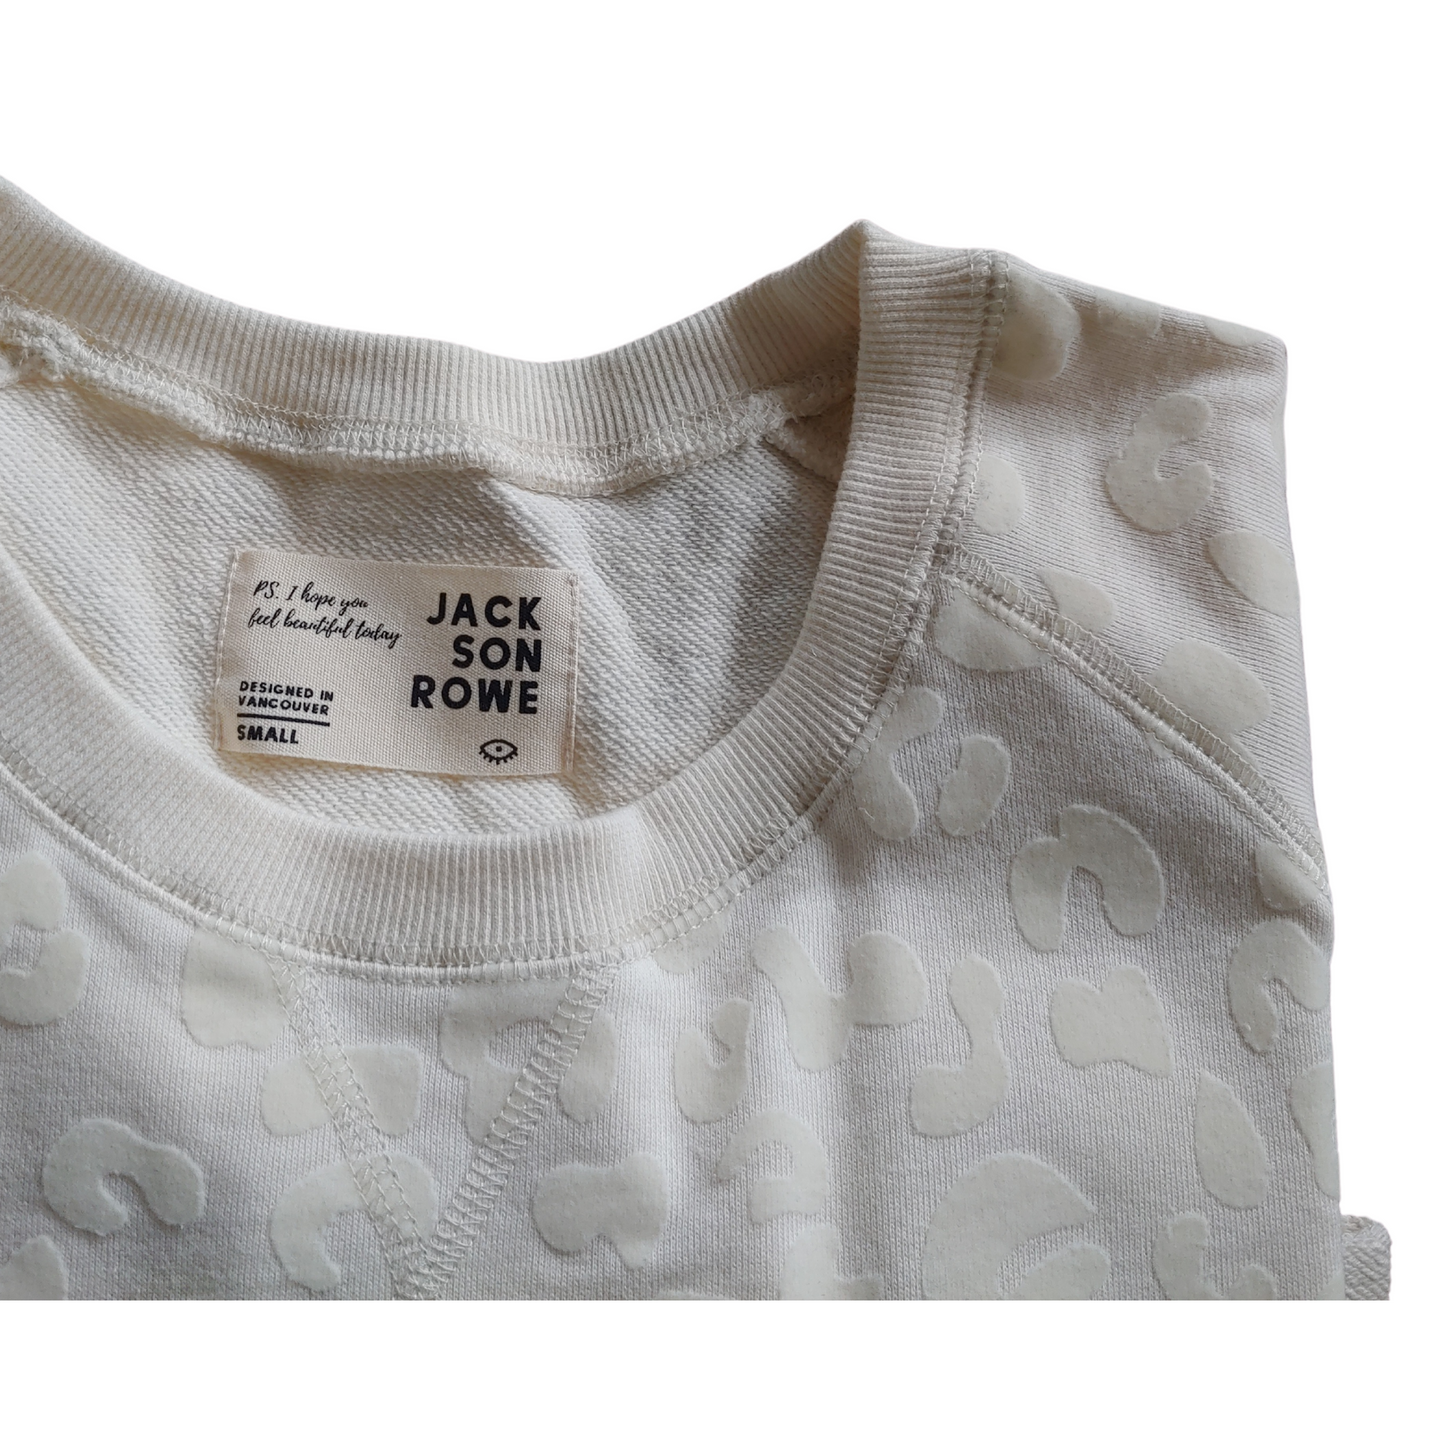 Jackson Rowe "Arose" Sweatshirt (Shell)